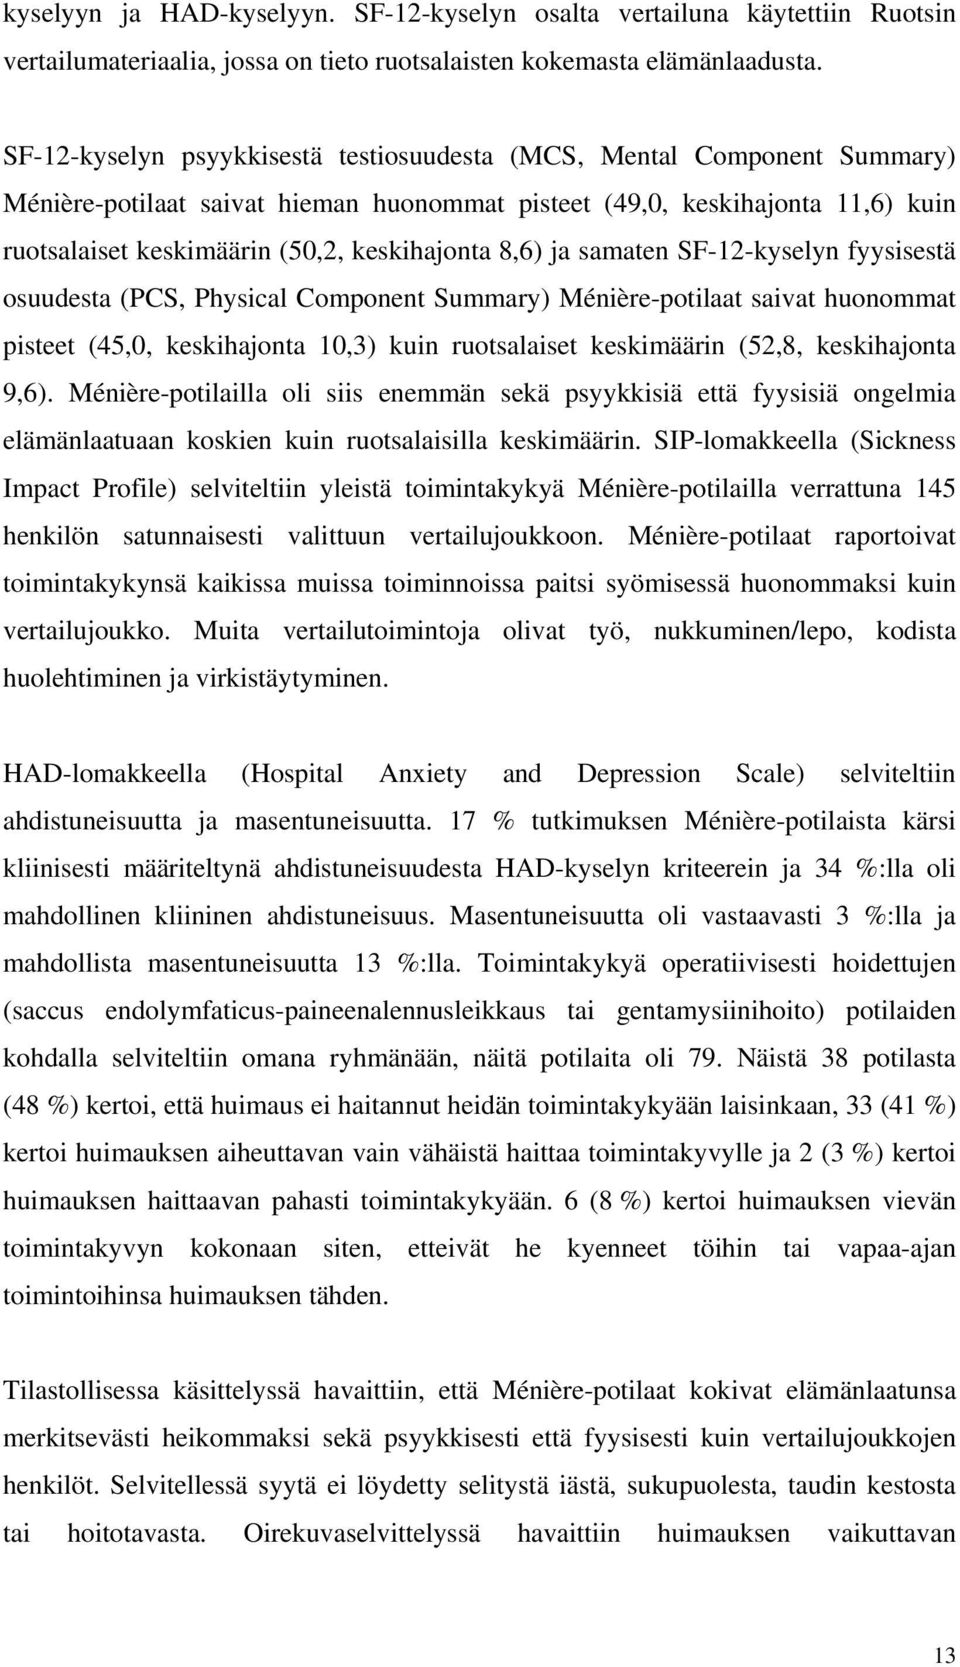 8,6) ja samaten SF-12-kyselyn fyysisestä osuudesta (PCS, Physical Component Summary) Ménière-potilaat saivat huonommat pisteet (45,0, keskihajonta 10,3) kuin ruotsalaiset keskimäärin (52,8,